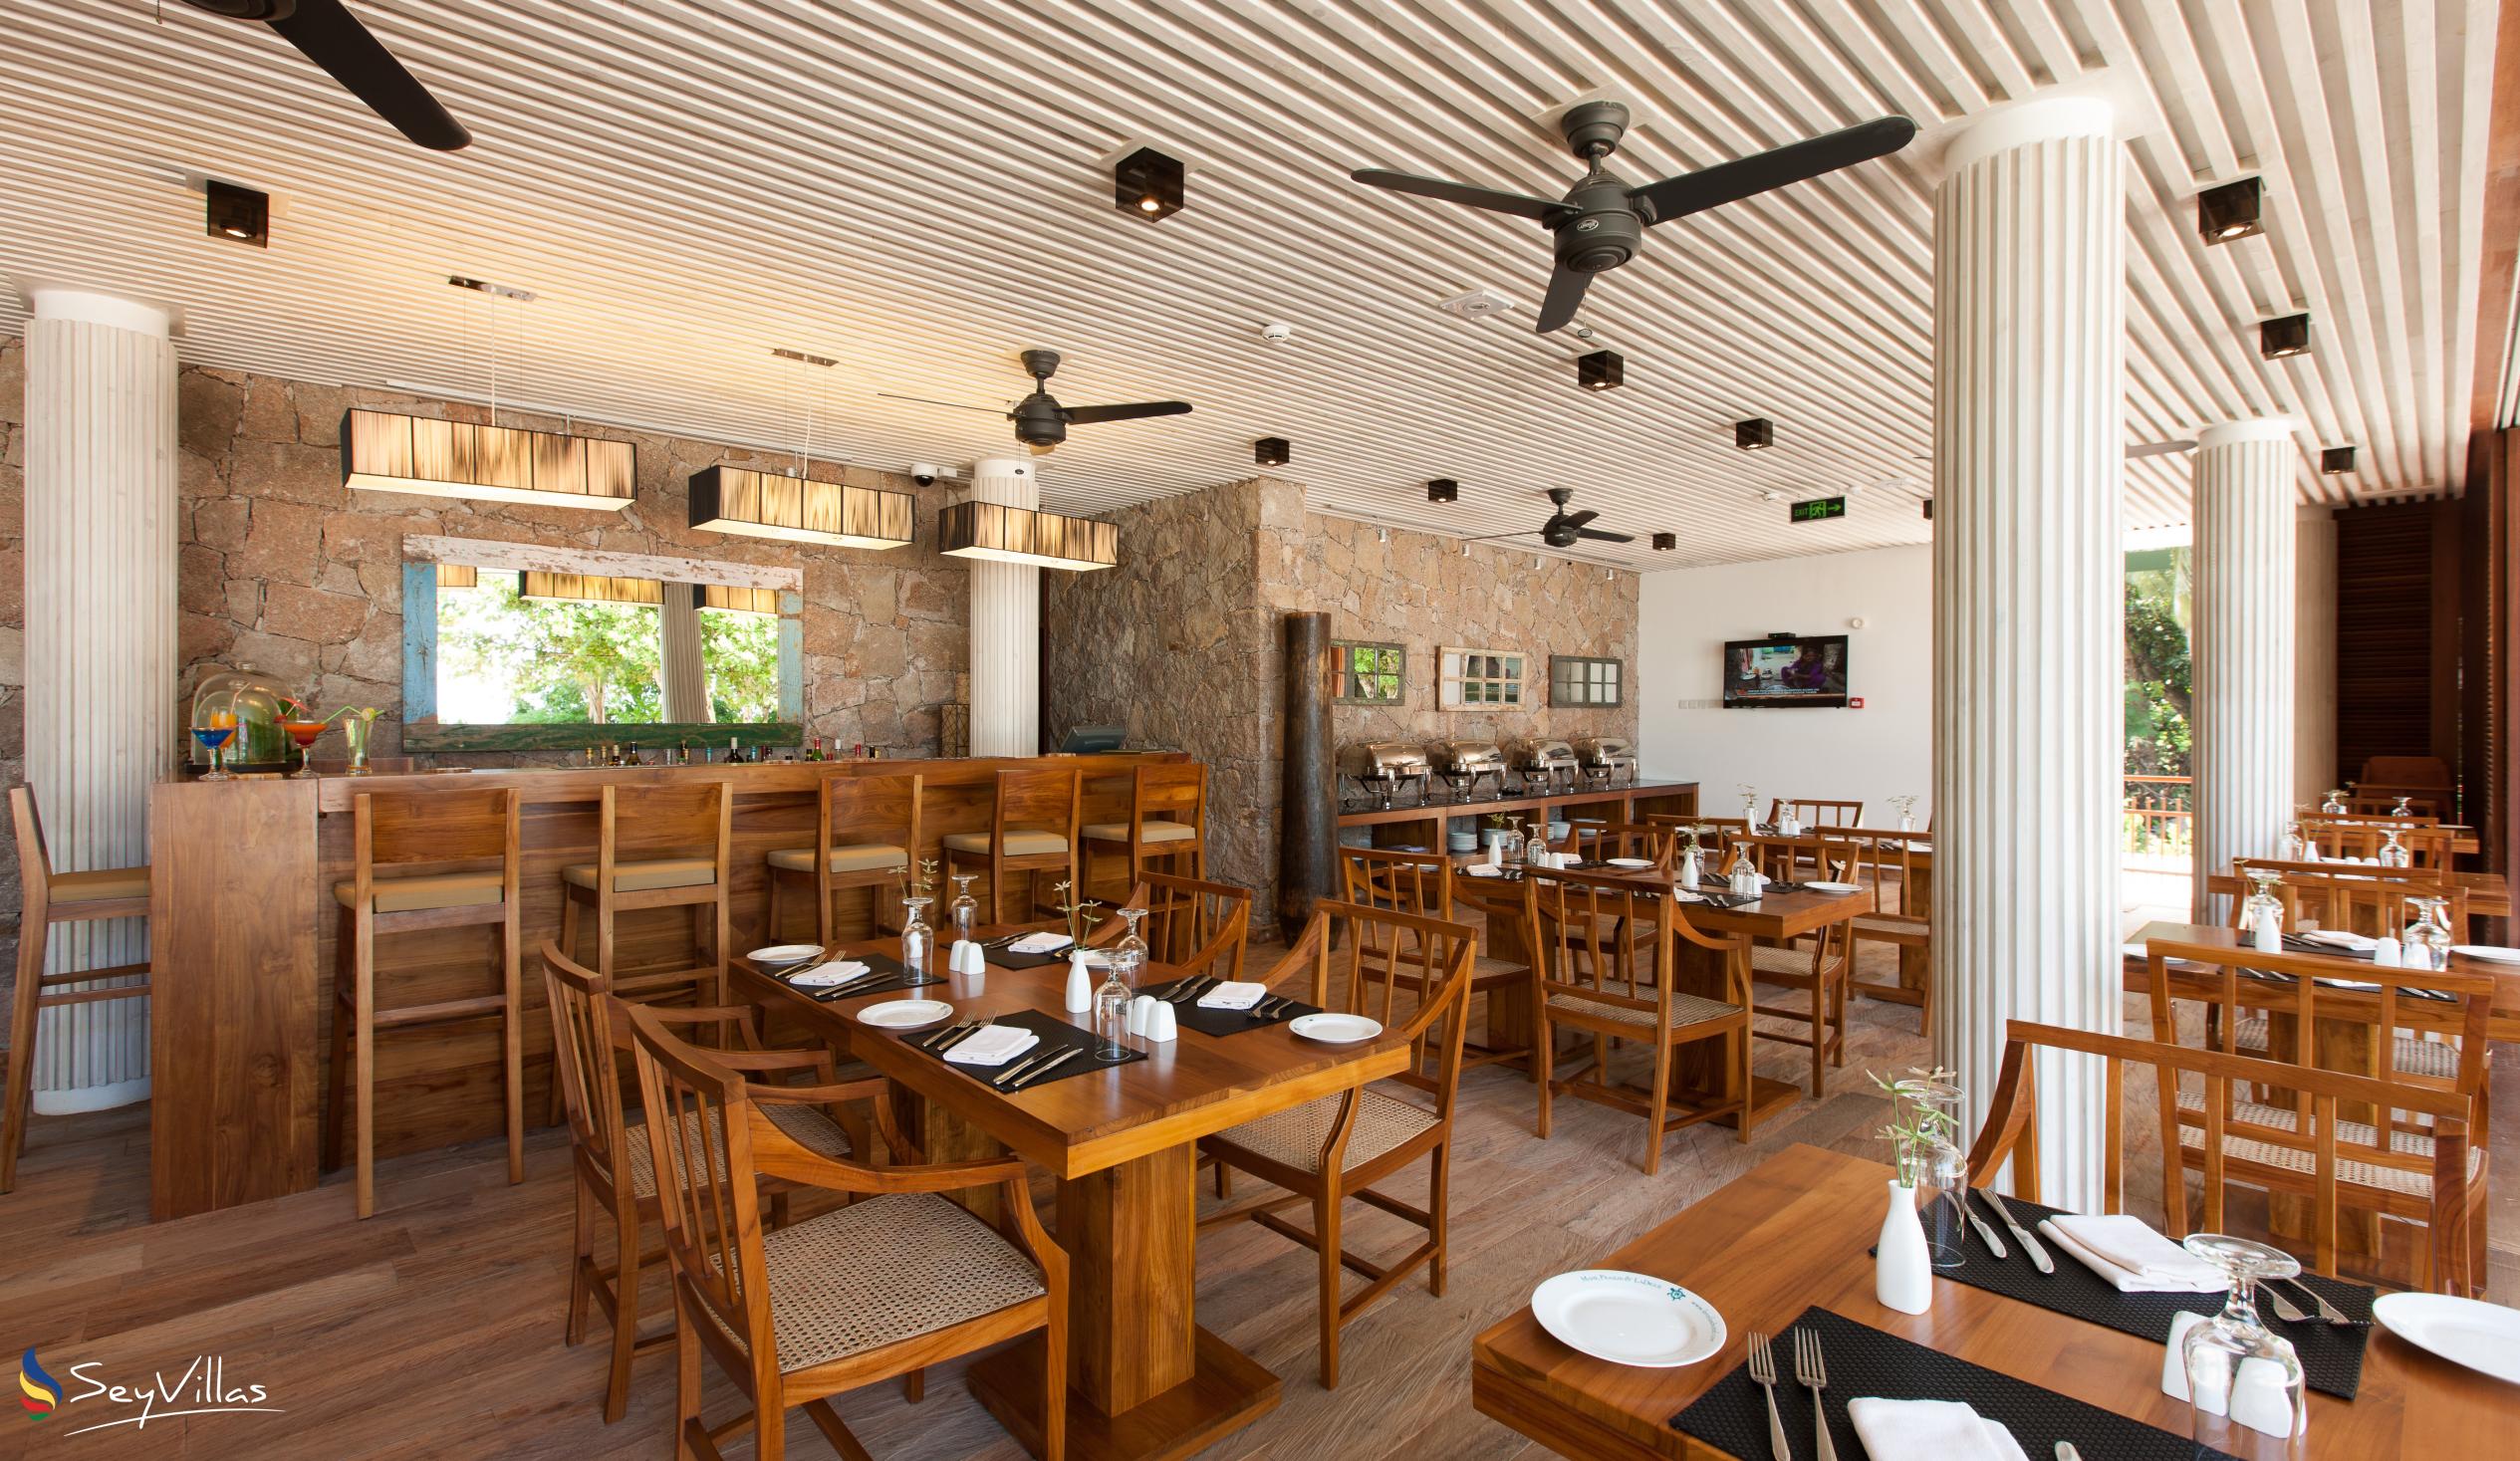 Foto 9: Le Relax Luxury Lodge - Innenbereich - La Digue (Seychellen)